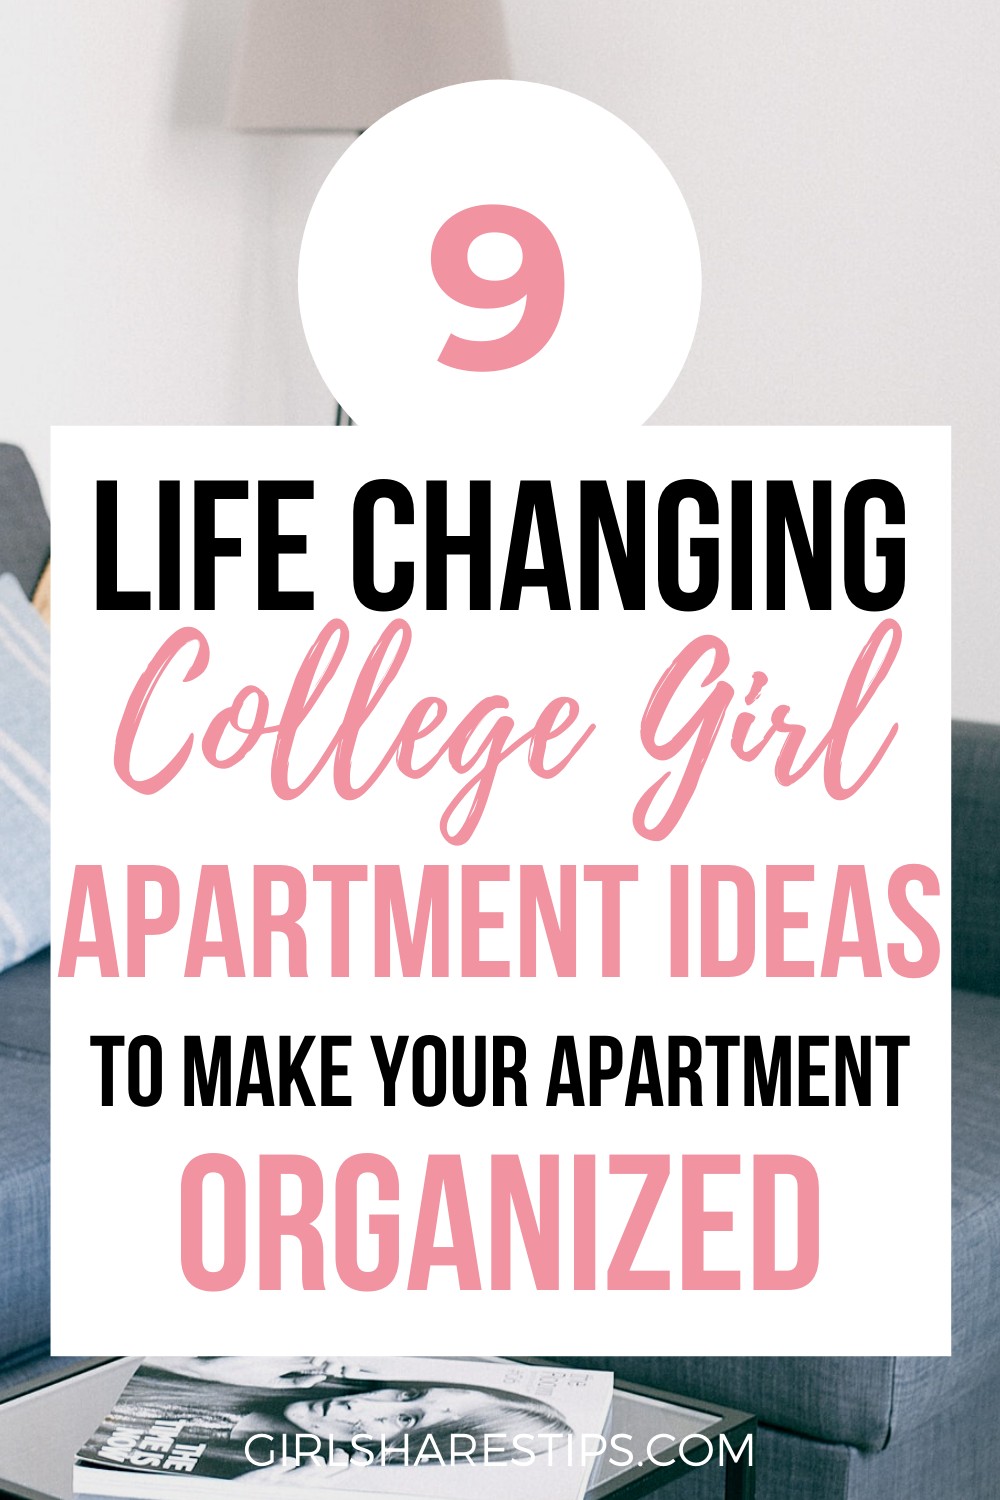 college girl apartment ideas